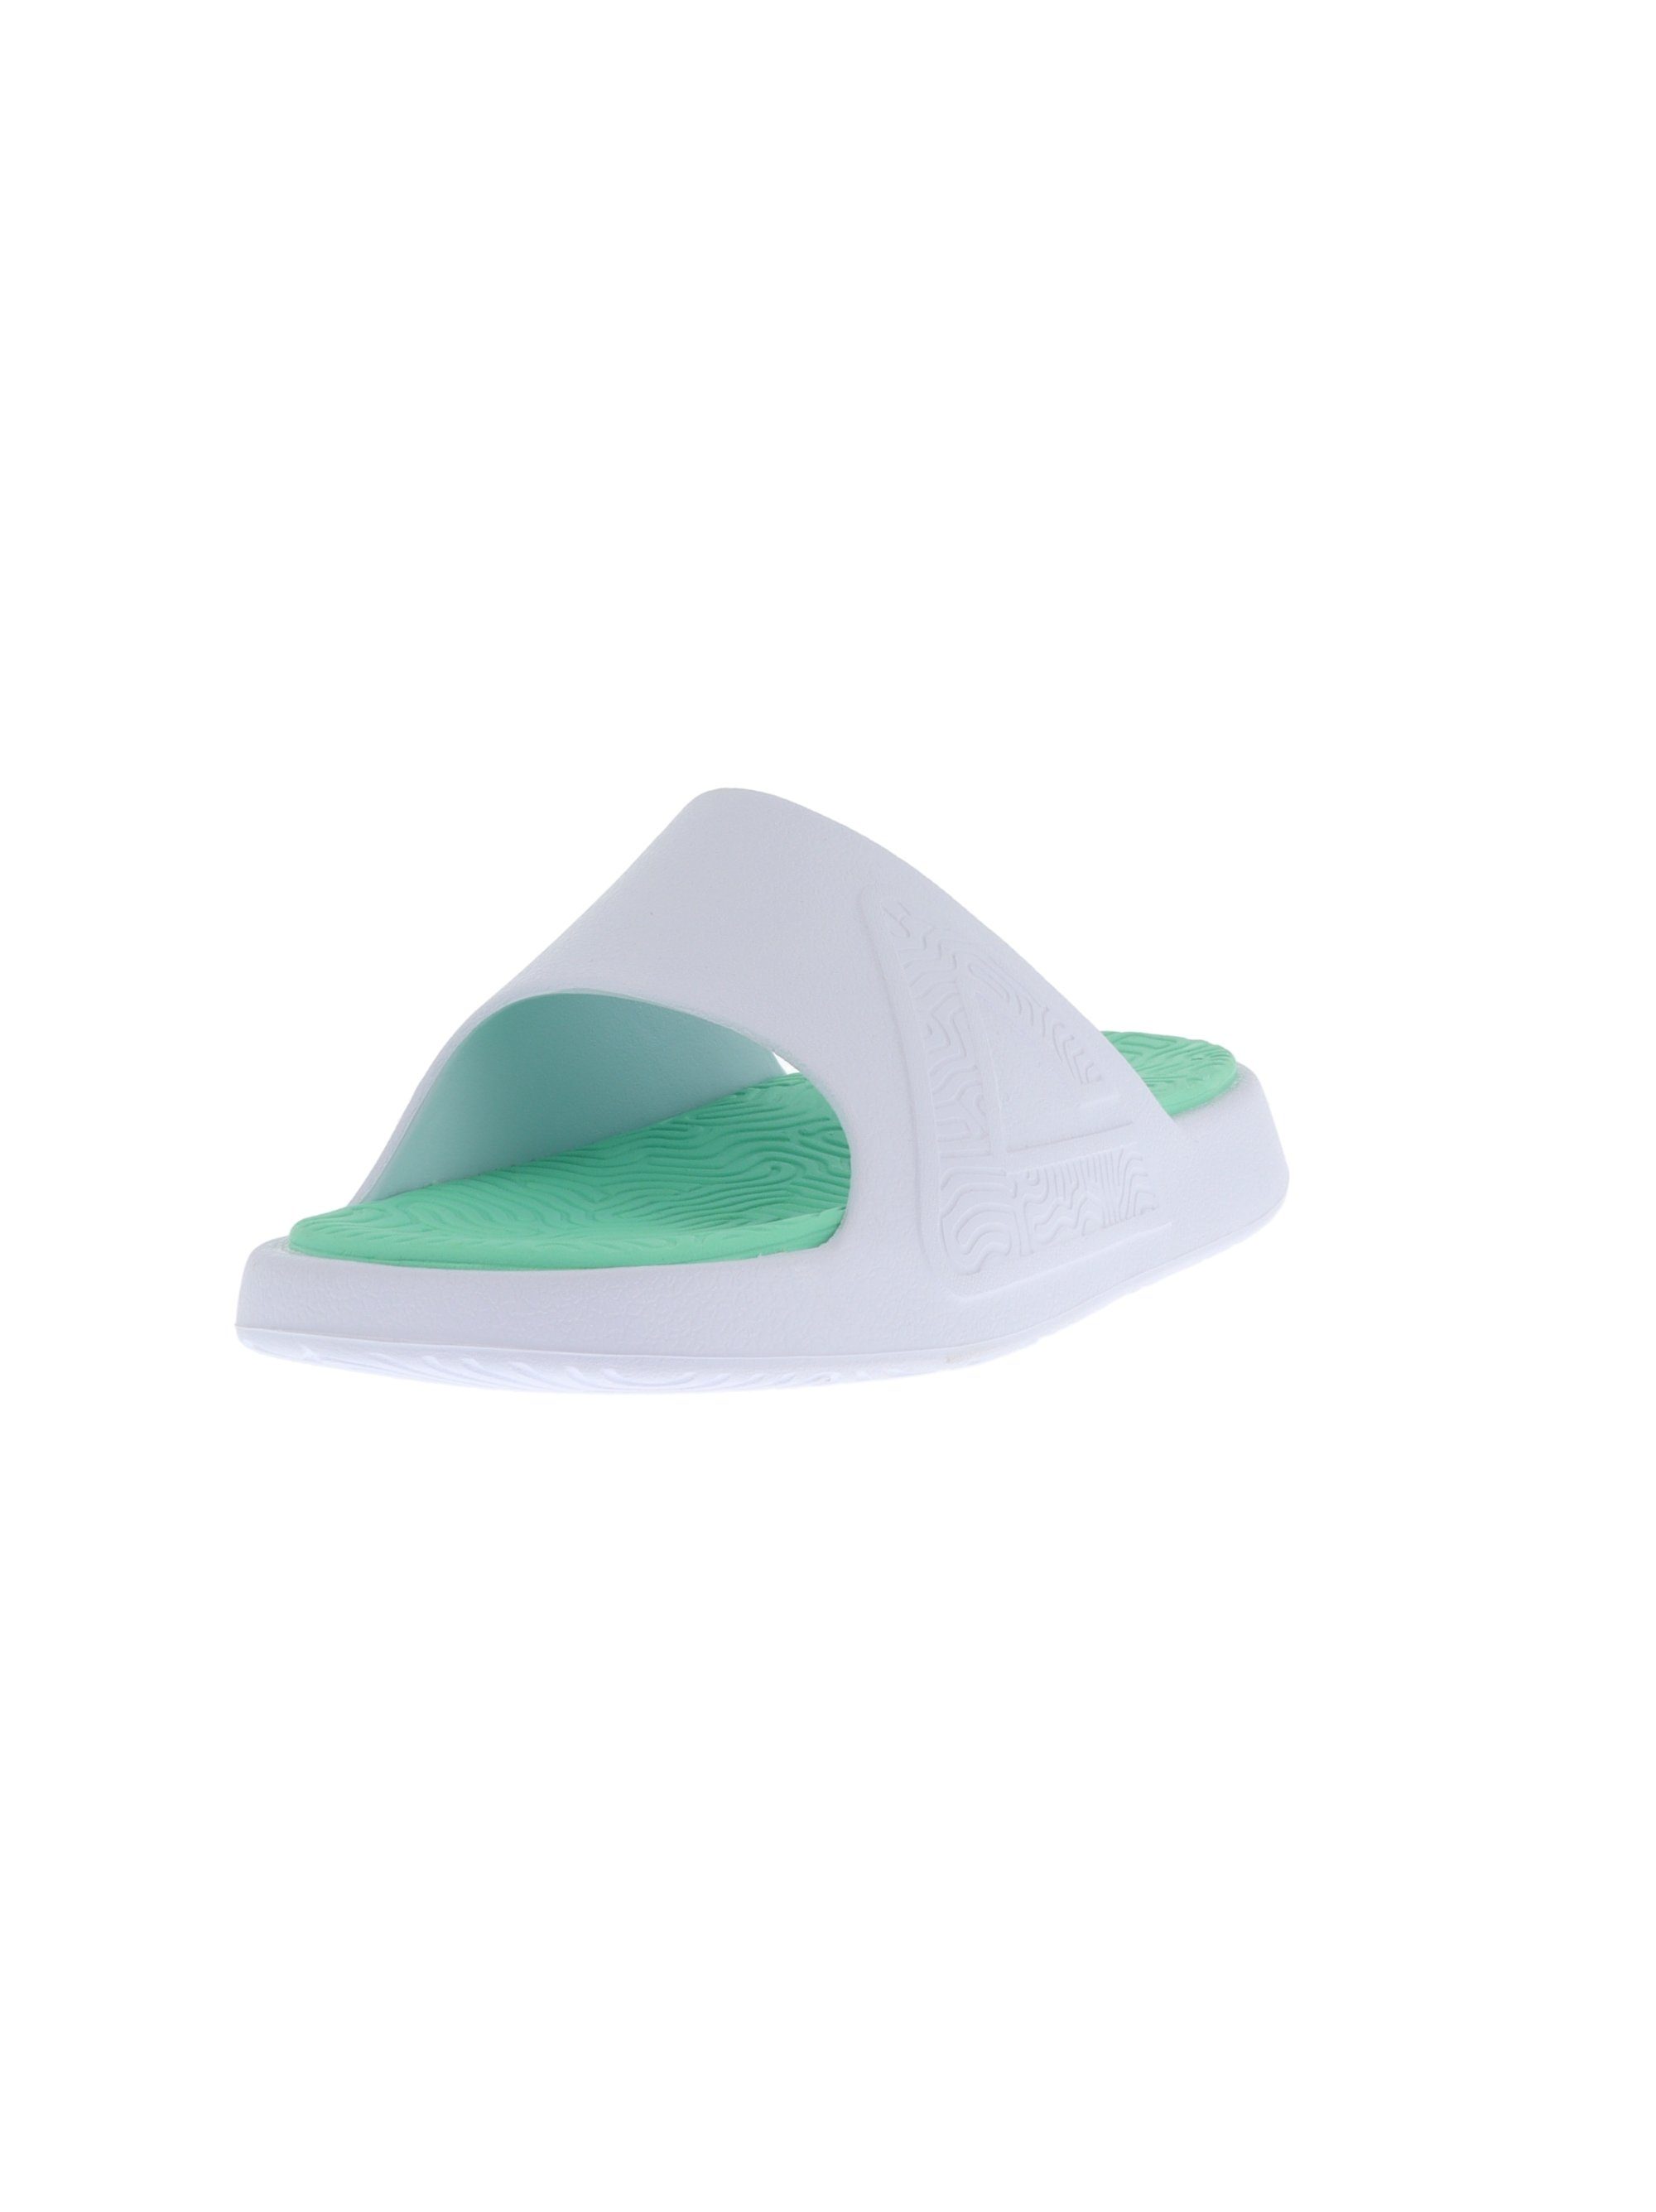 PEAK TaiChi Slipper Badeschuh mit innovativer Gel-Zwischensohle grün-weiß